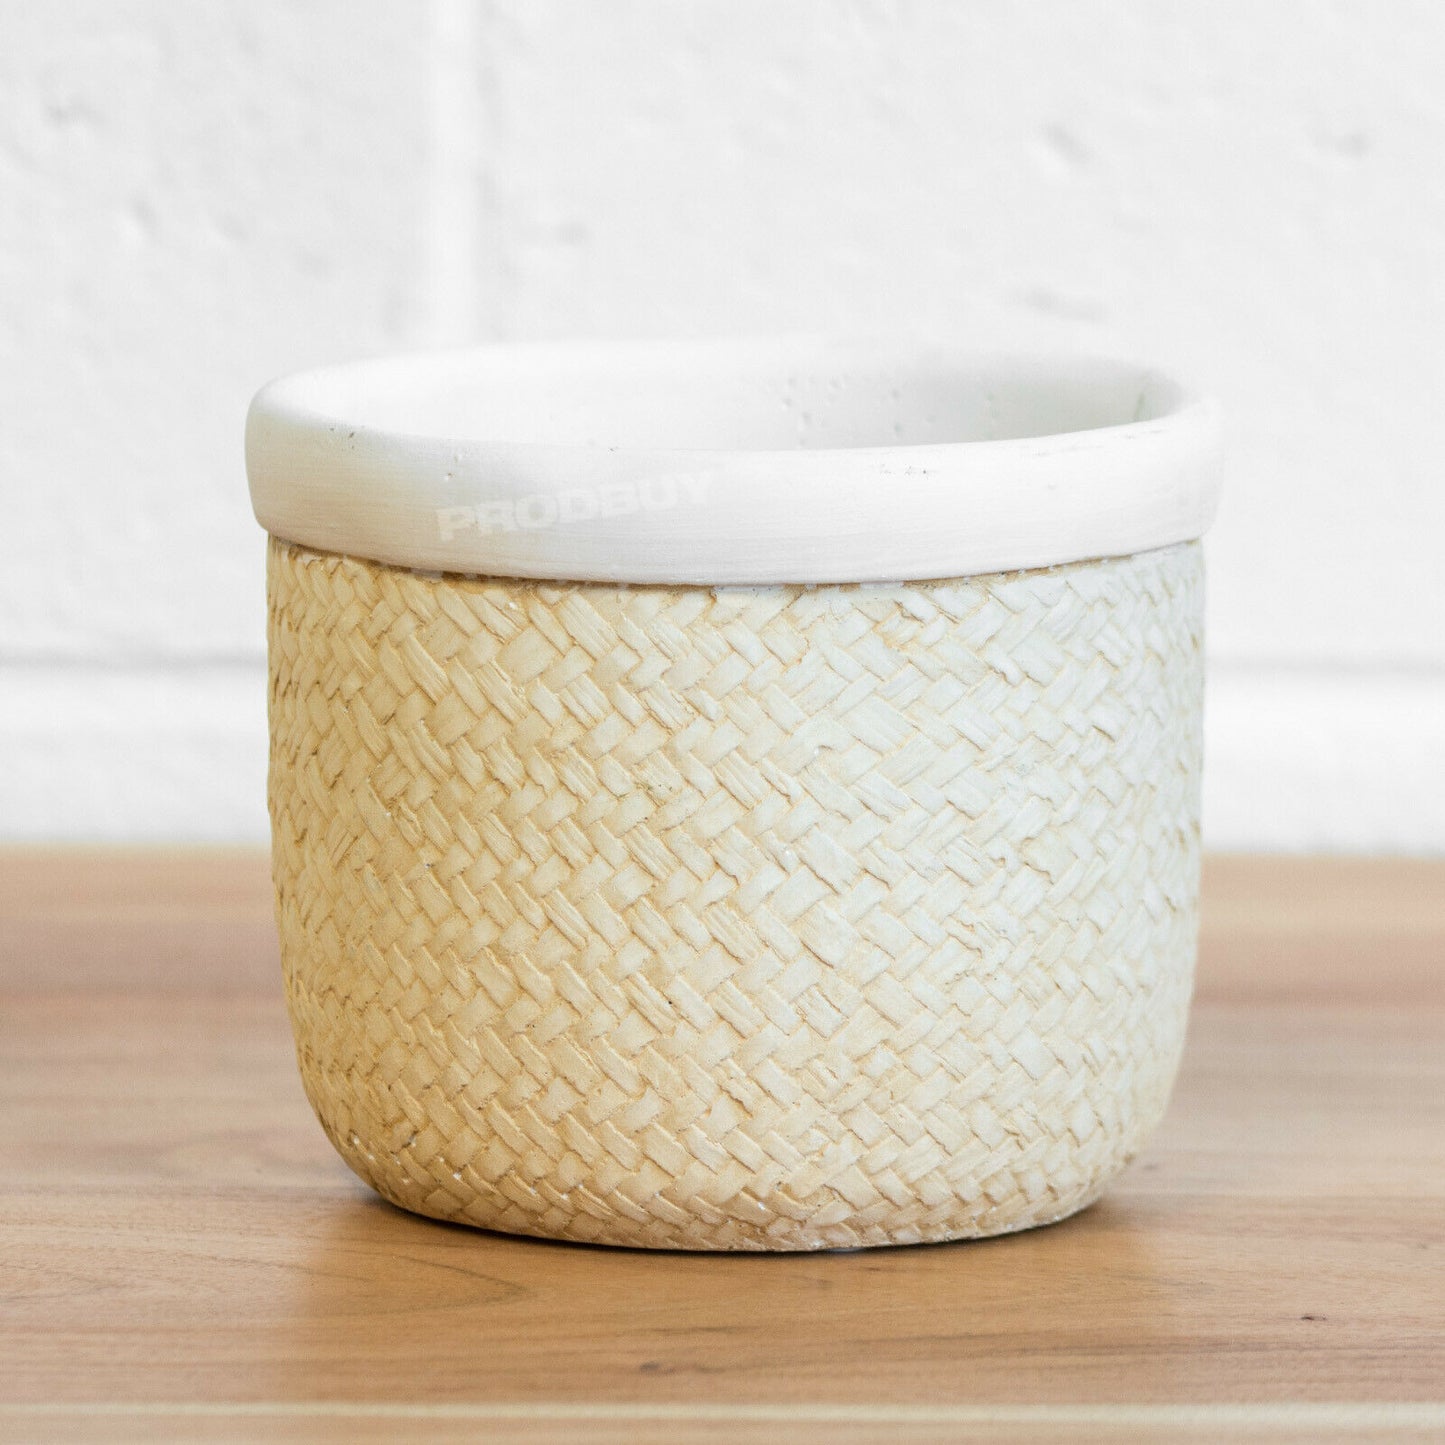 Woven Style 16cm Ceramic Plant Pot